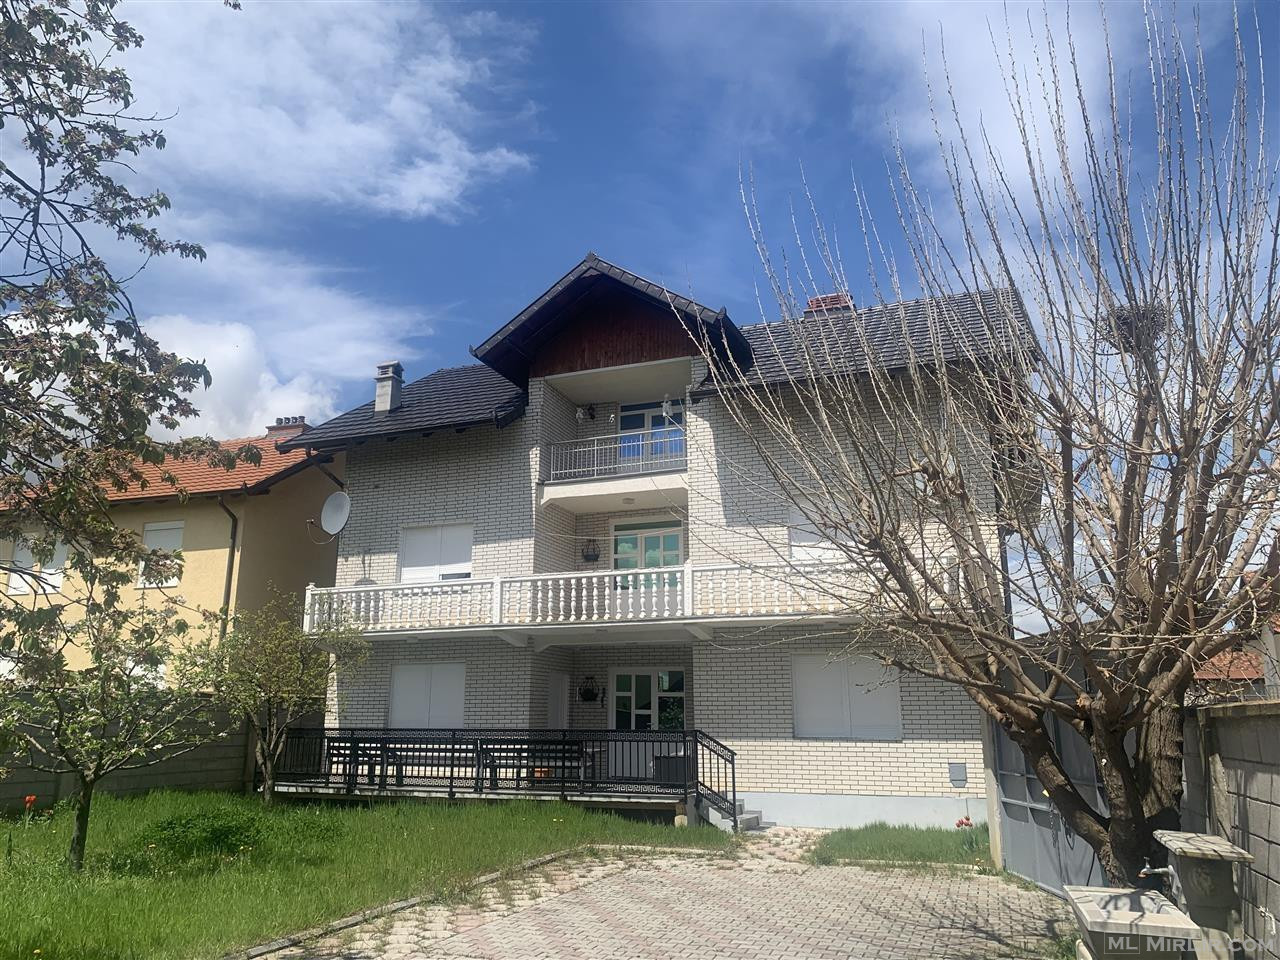 Shiten 2 shtepi ne Shipol Mitrovice